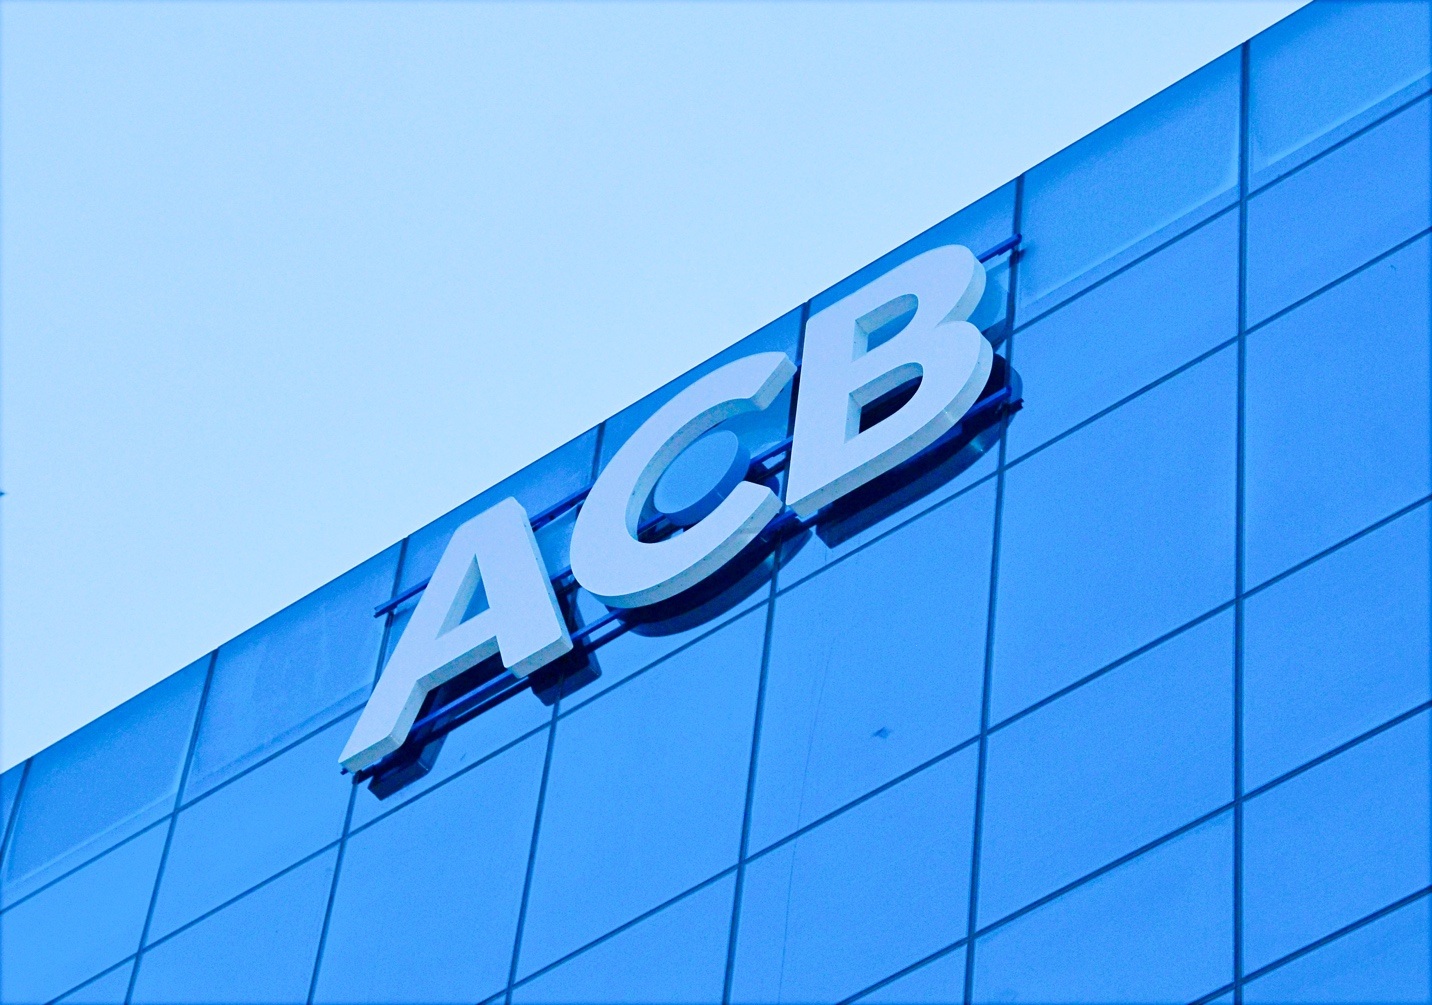 ACB muốn huy động thêm 2.500 tỷ đồng qua kênh trái phiếu, lãi suất 6,5%/năm